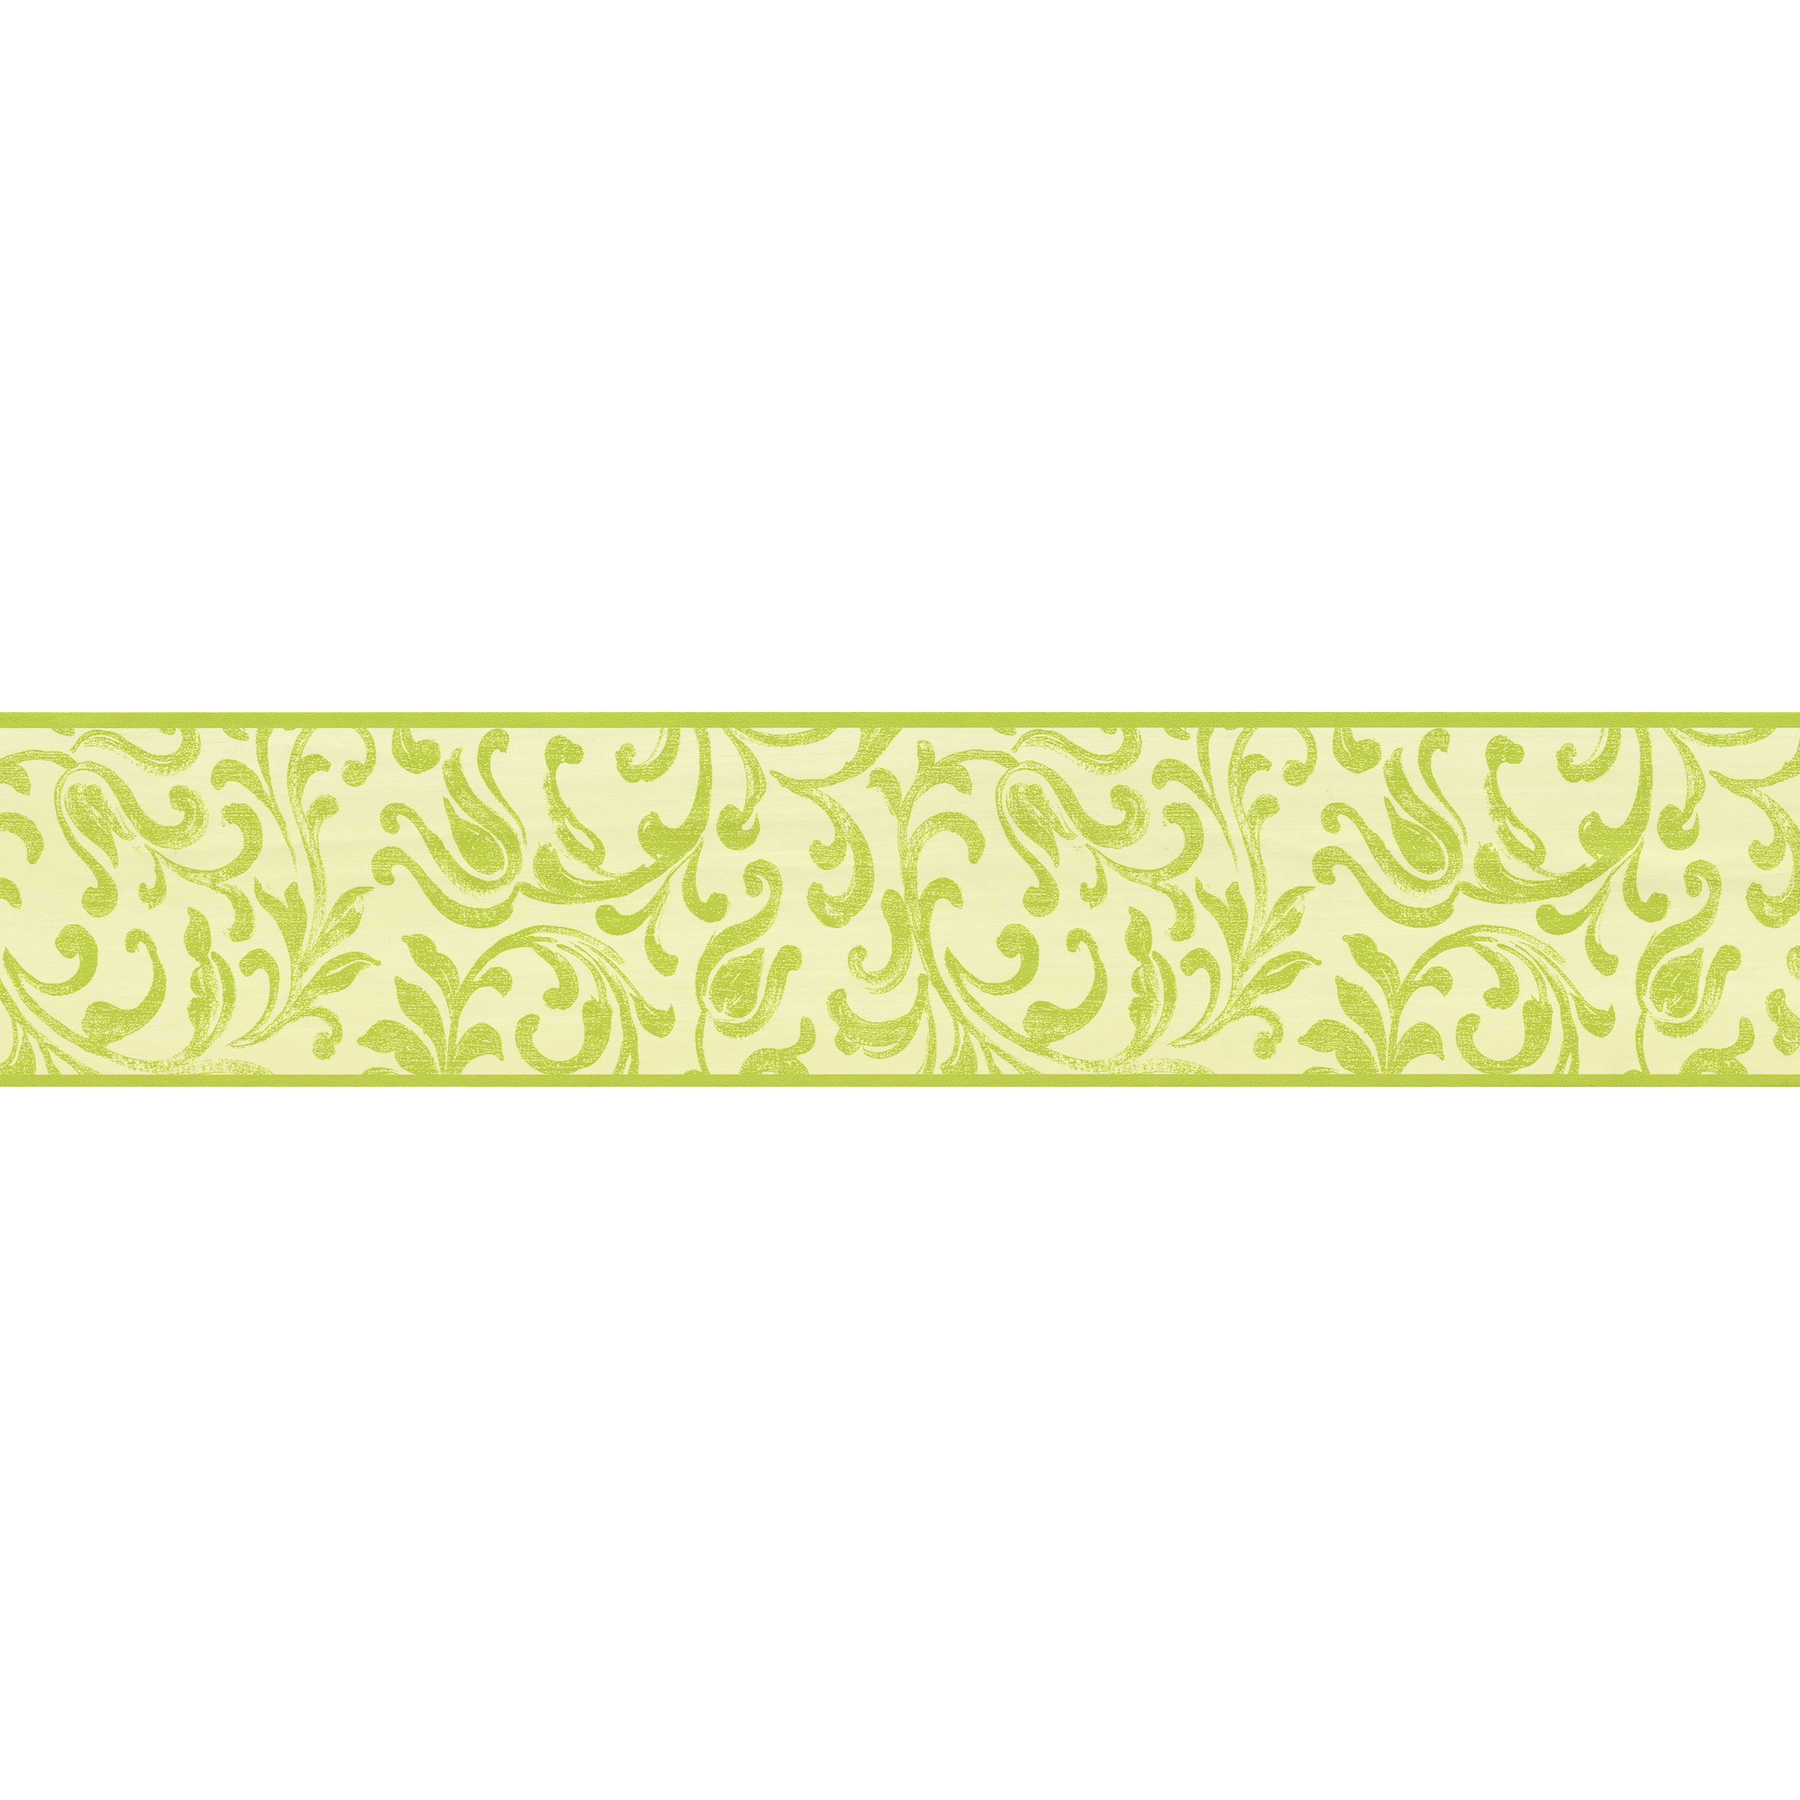         Wallpaper border floral meander in light green
    